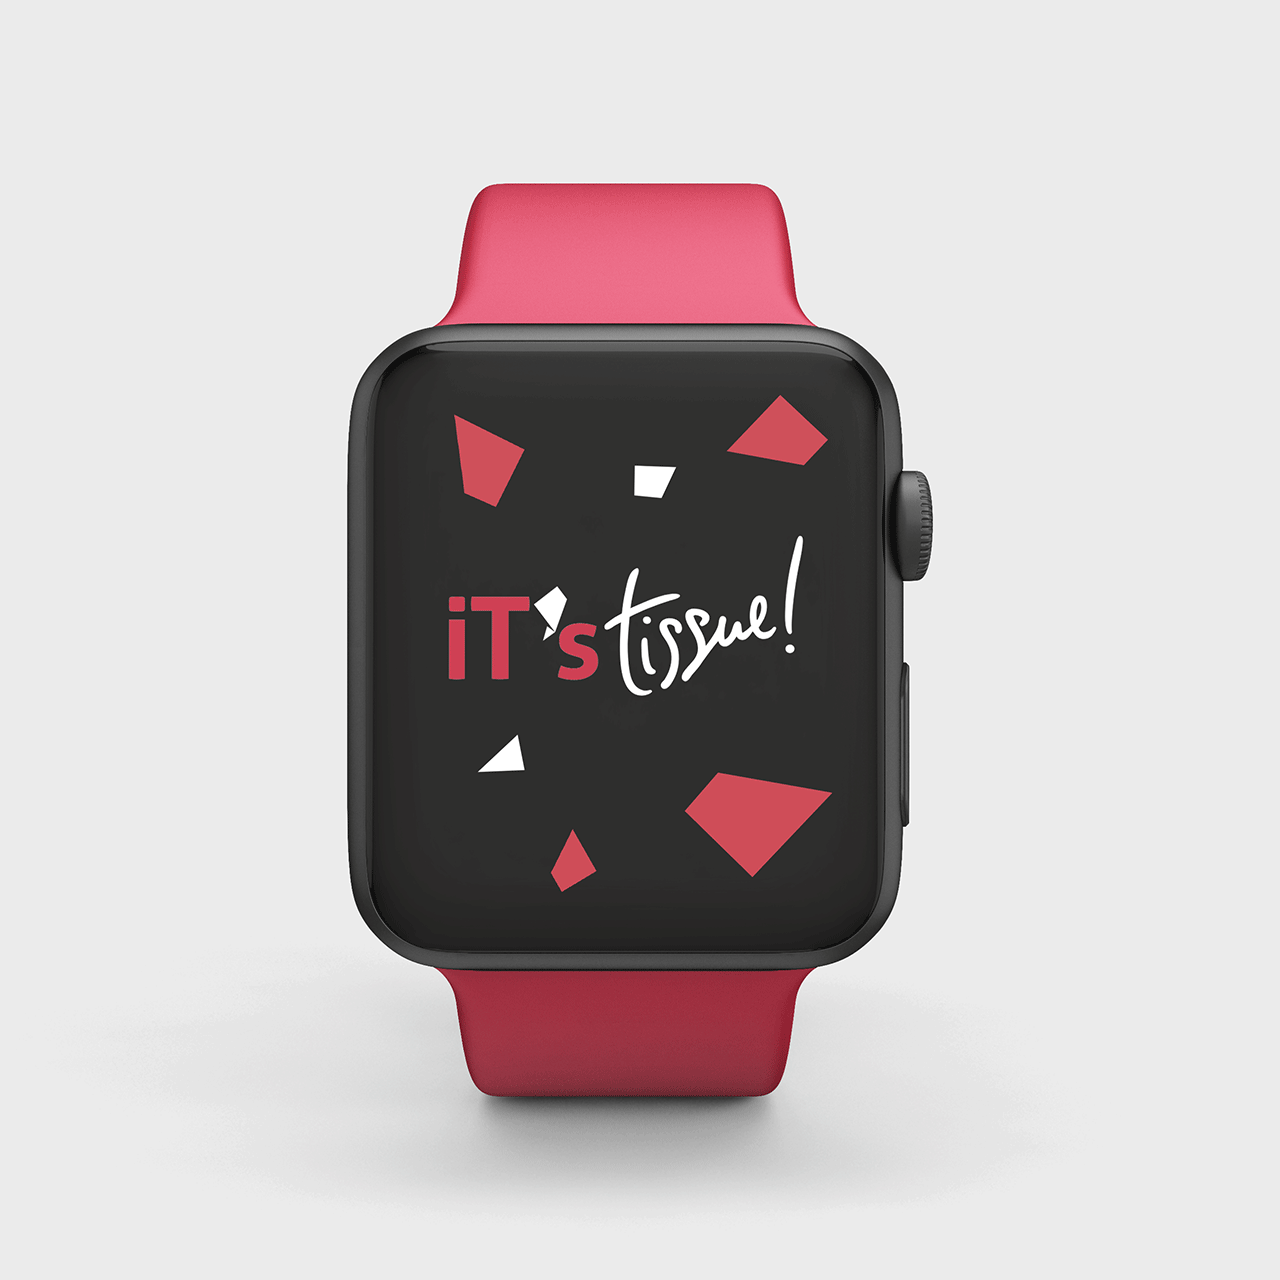 Smartwatch che alterna immagini con slogan relative all'evento iT's Tissue